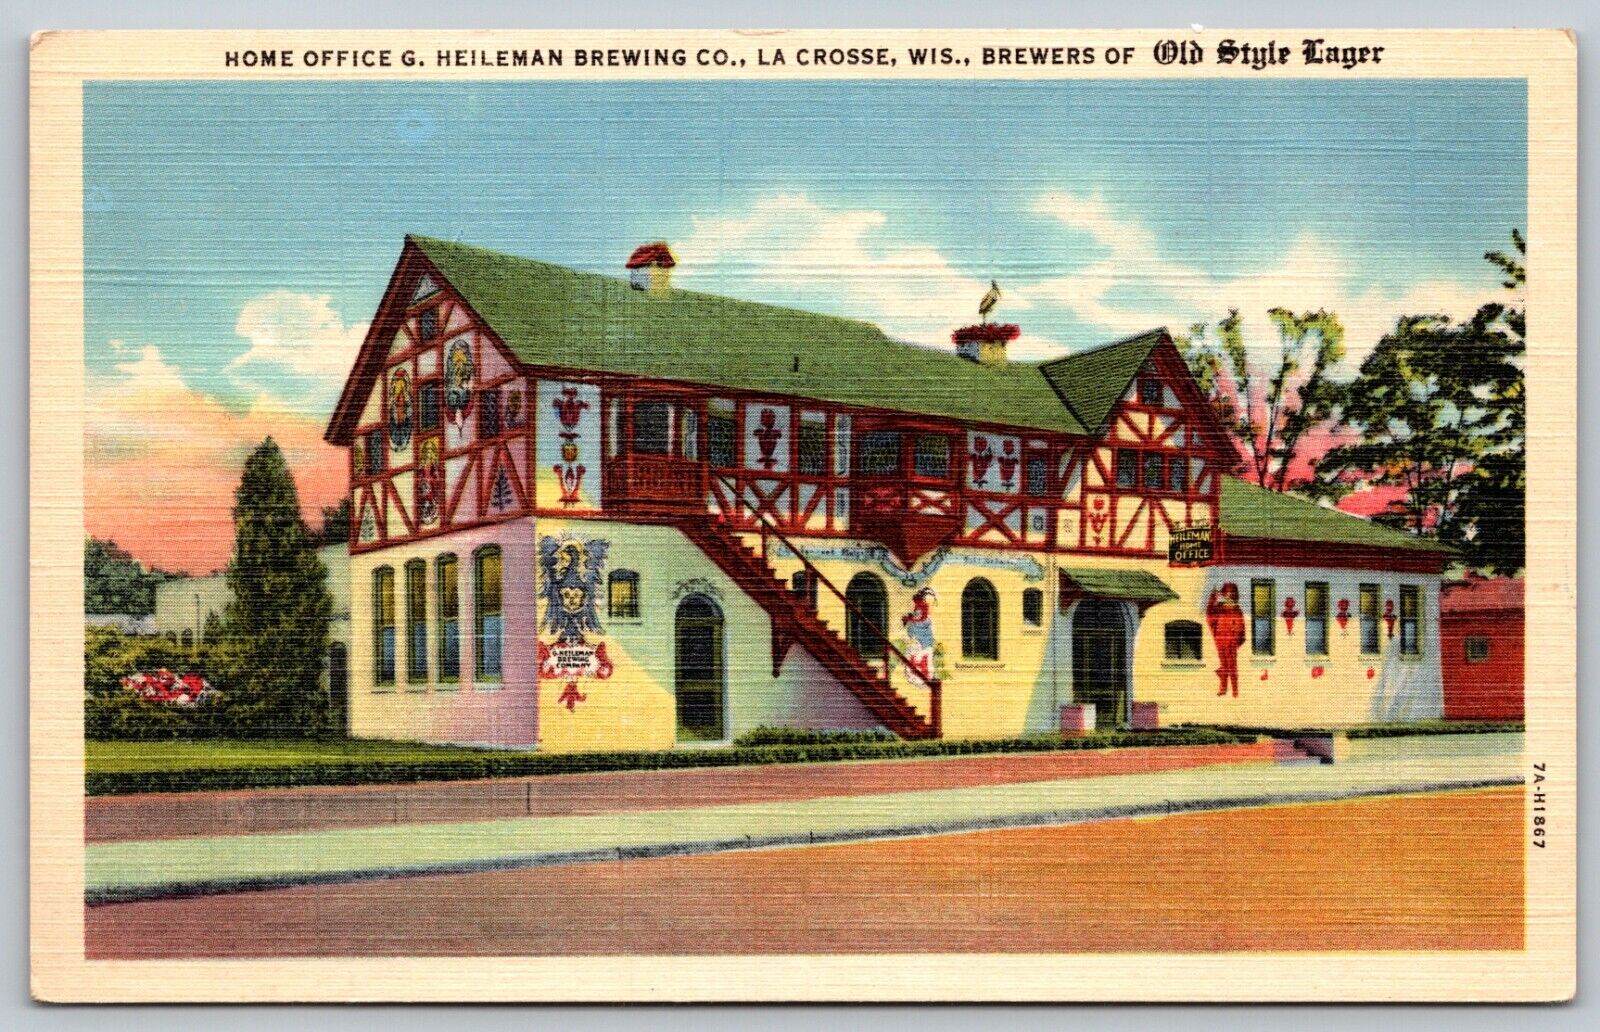 HEILEMAN BREWING 1939 OLD STYLE LAGER BEER vintage postcard La Crosse Wisconsin